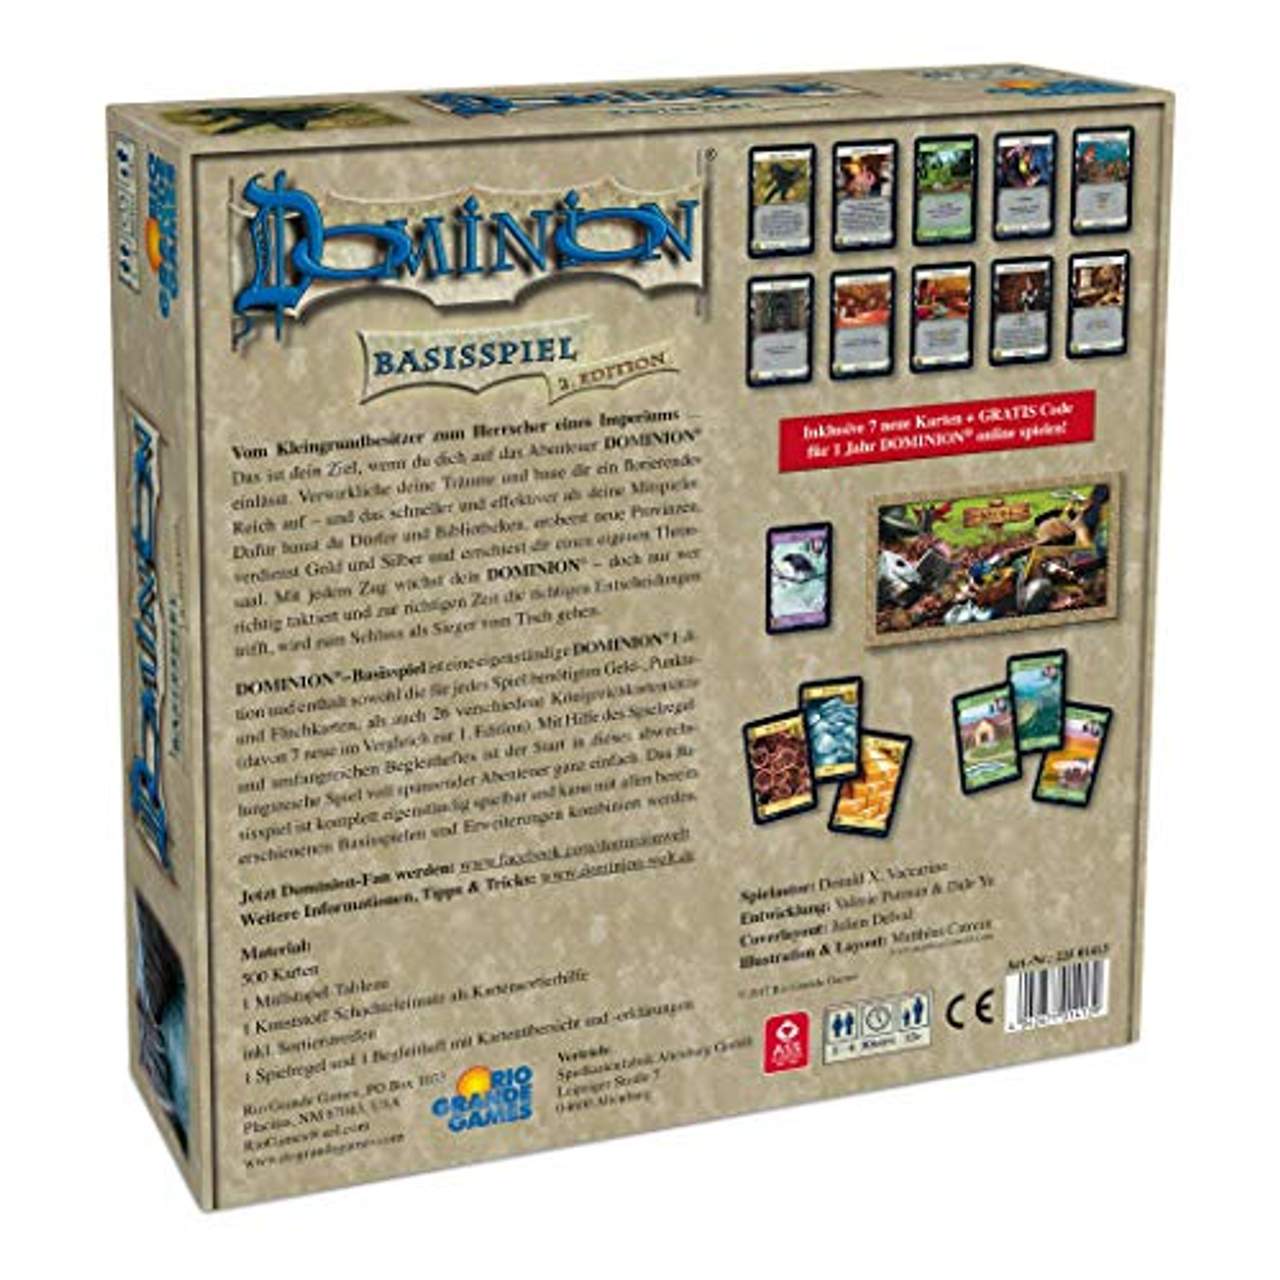 Dominion Basisspiel, Spiel des Jahres 2009